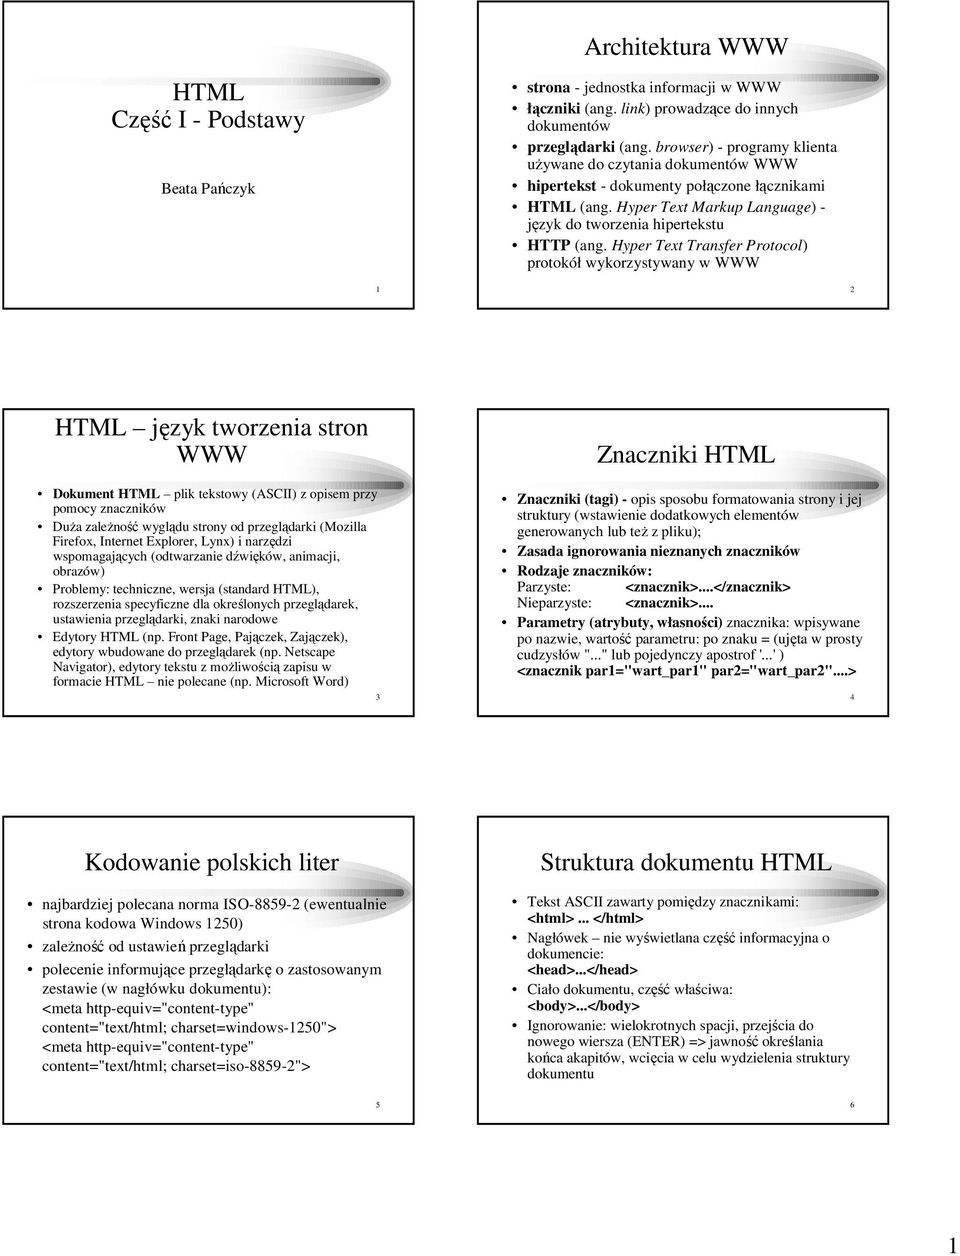 Hyper Text Transfer Protocol) protokół wykorzystywany w WWW 1 2 HTML język tworzenia stron WWW Dokument HTML plik tekstowy (ASCII) z opisem przy pomocy znaczników DuŜa zaleŝność wyglądu strony od